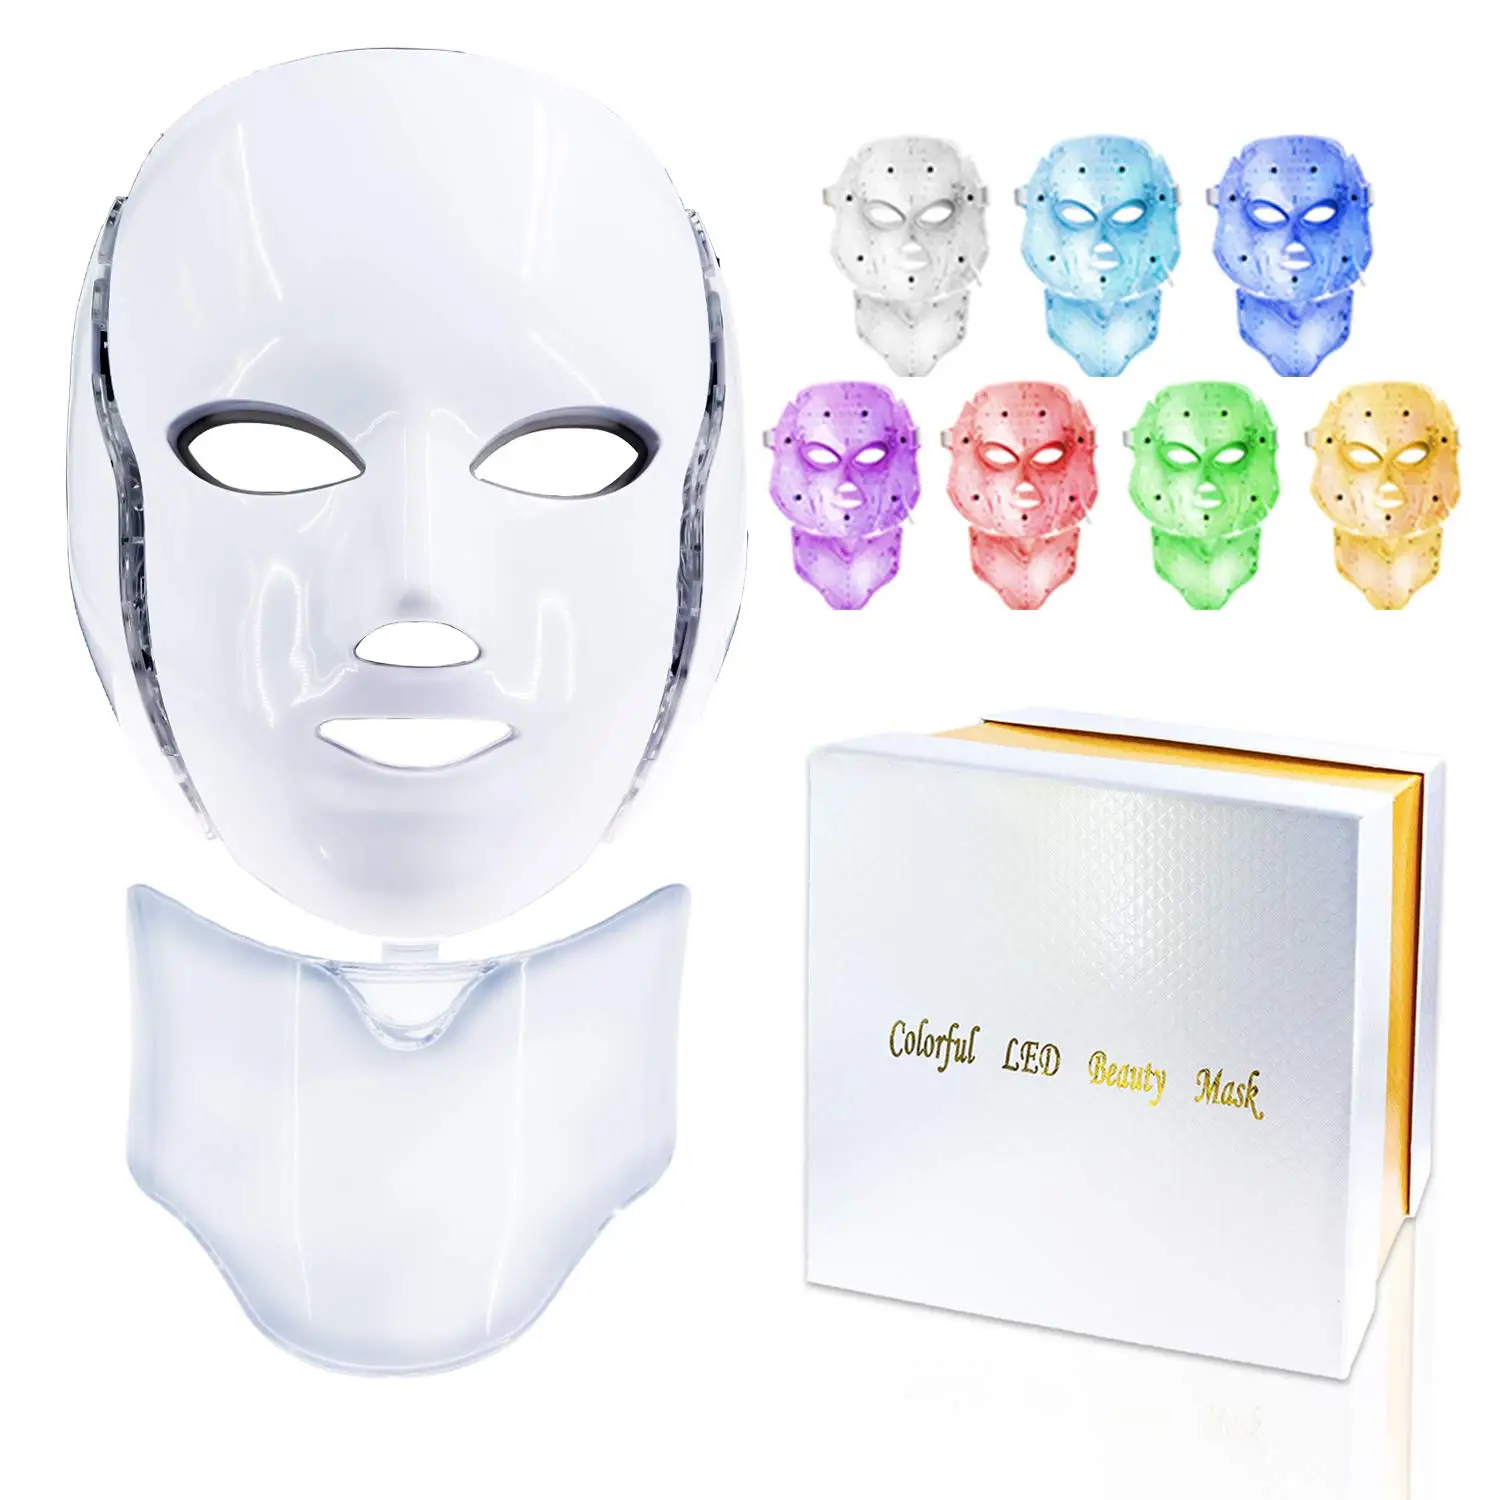 

Светодиодная маска 7 цветов светильник ная маска для лица, аппарат для красоты шеи и терапии со светодиодсветильник кой, омоложение кожи, пр...